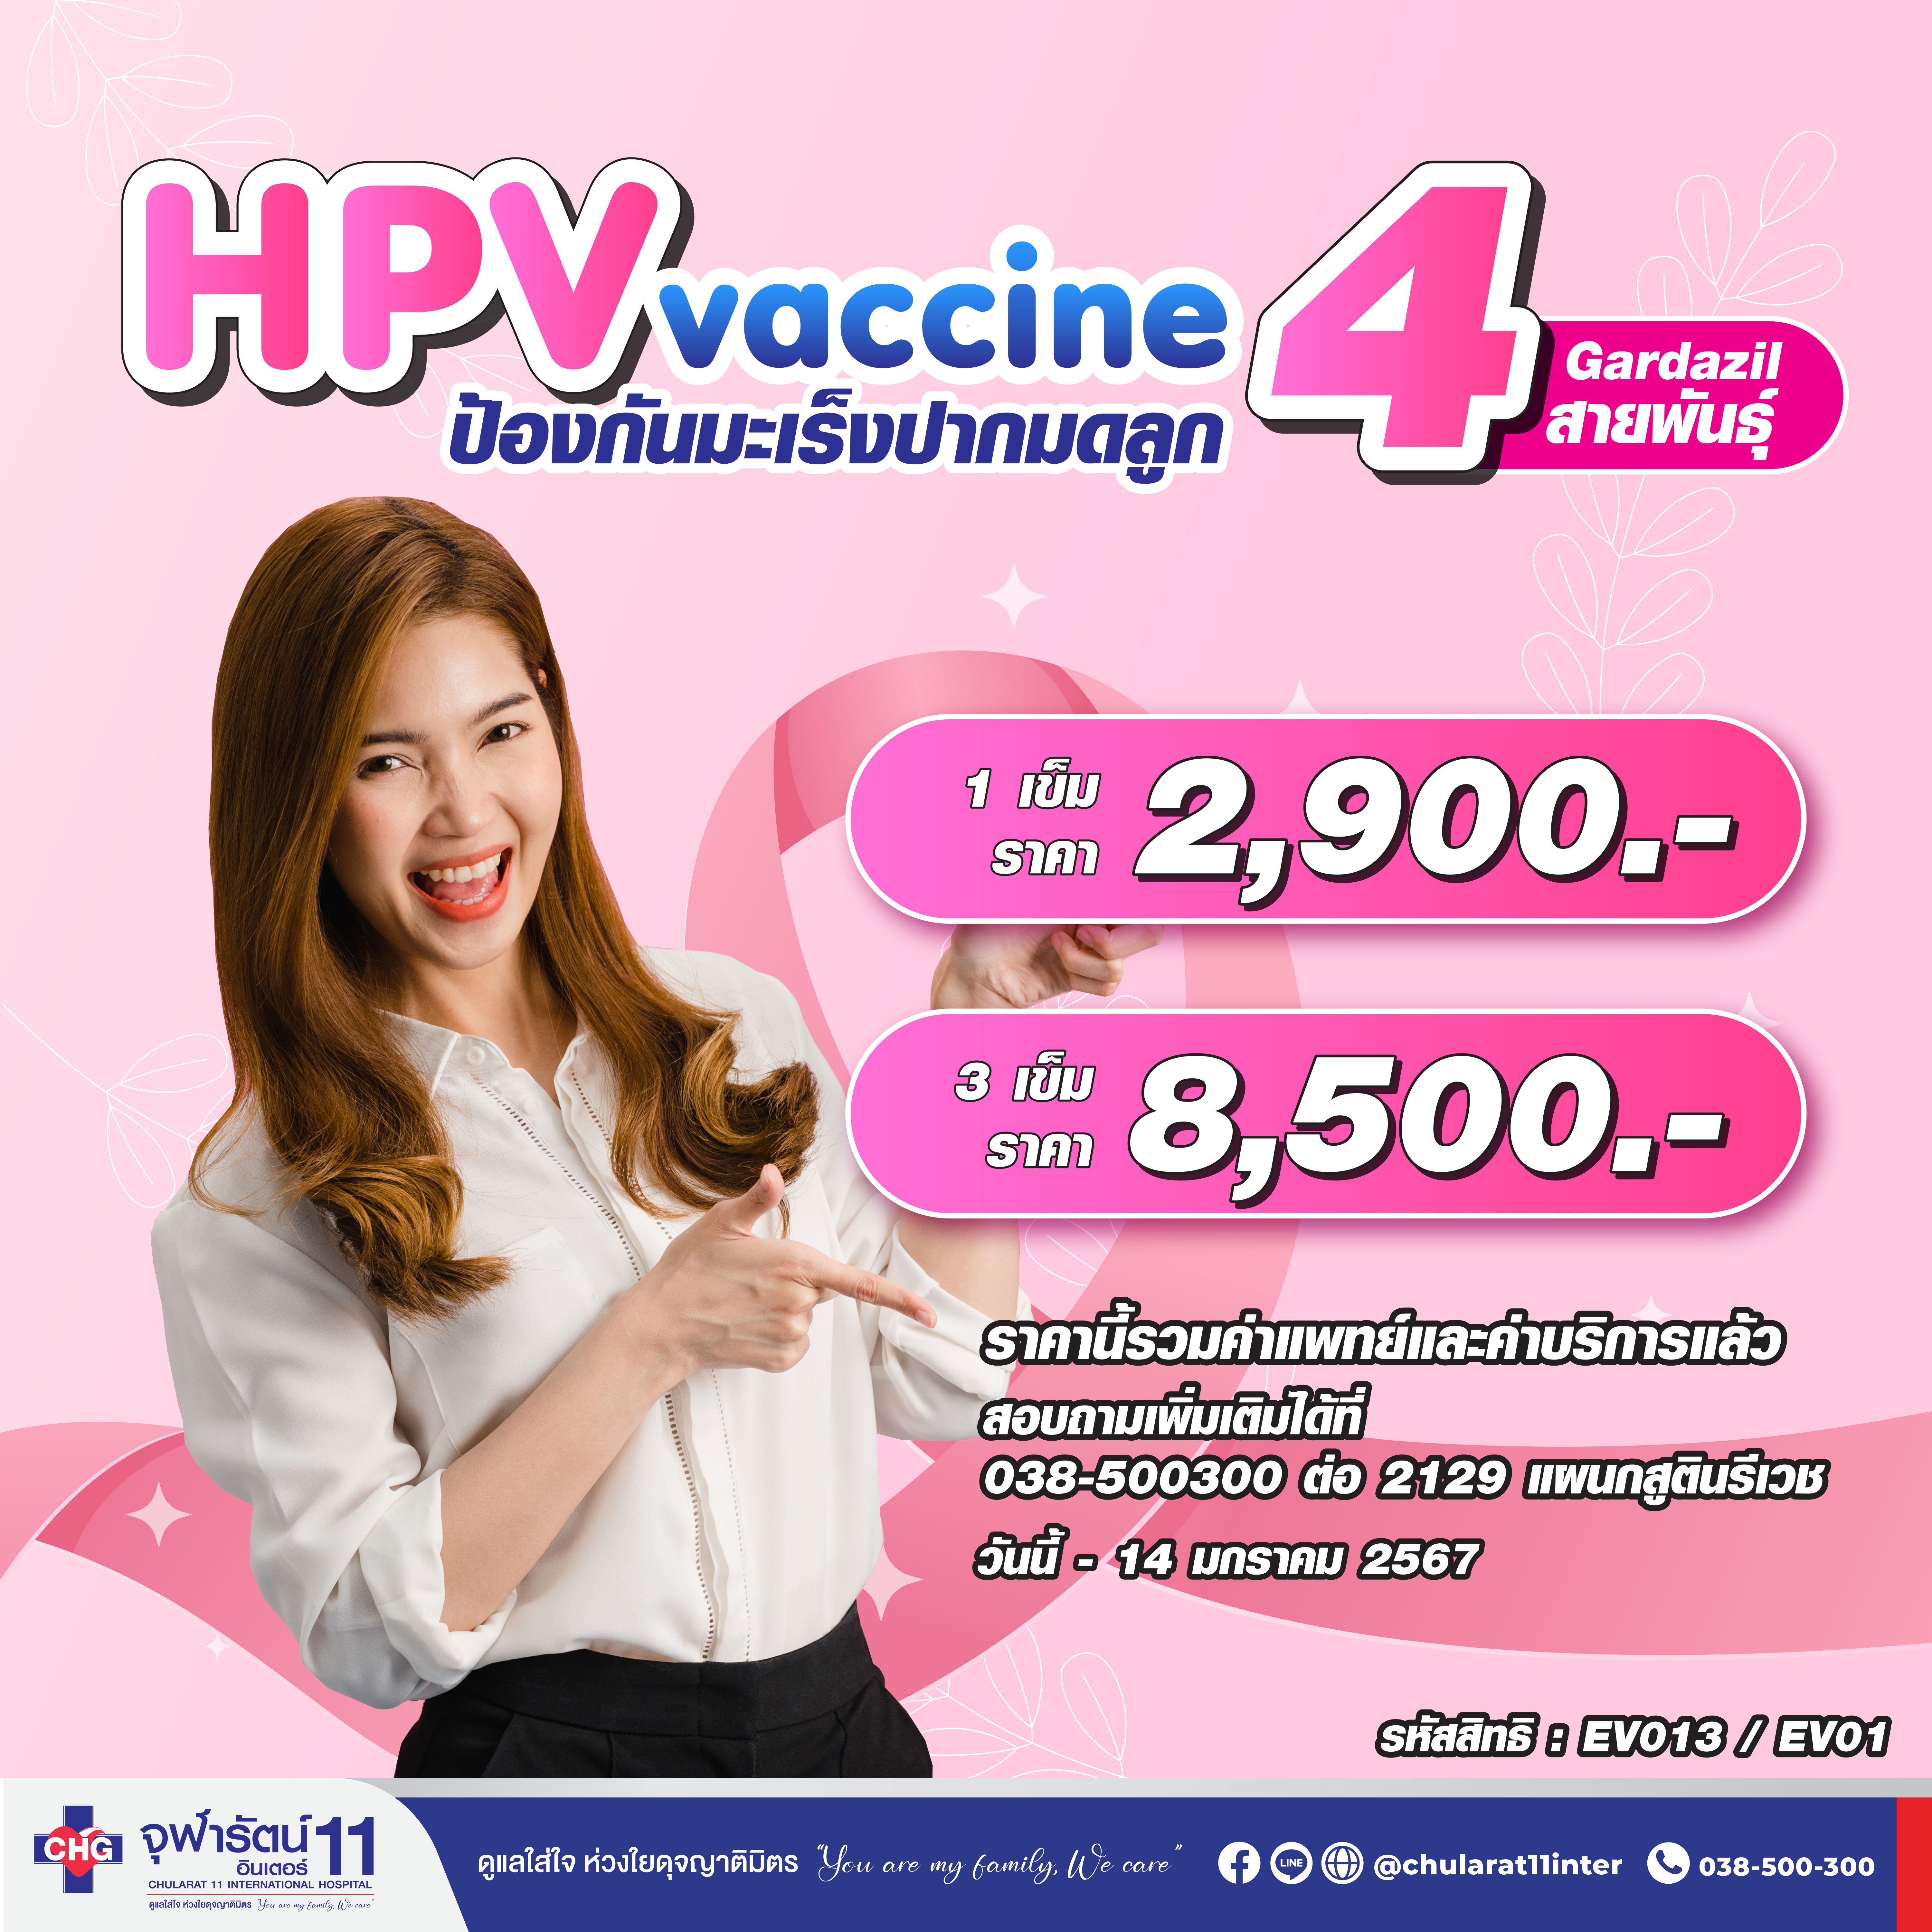 วัคซีนป้องกันมะเร็งปากมดลูก HPV Vaccine 4 สายพันธุ์ - แพ็คเกจโปรโมชั่น - โรงพยาบาลจุฬารัตน์ 11 อินเตอร์